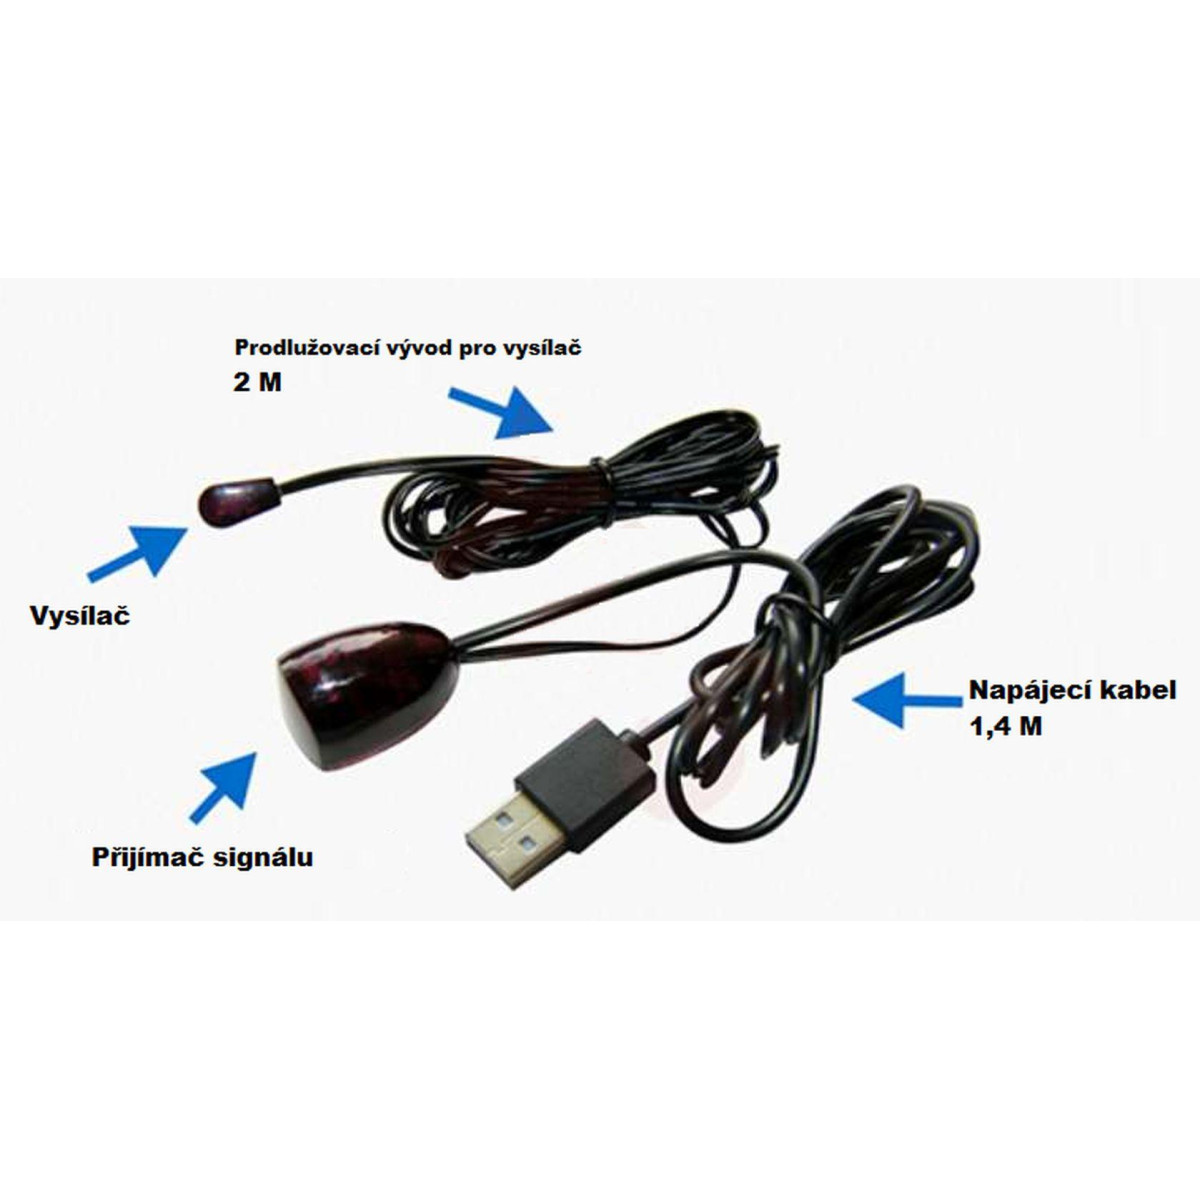 More about Univerzální opakovač, prodlužovač signálu dálkového ovladače DA4339A, USB, 2m kompatibilní